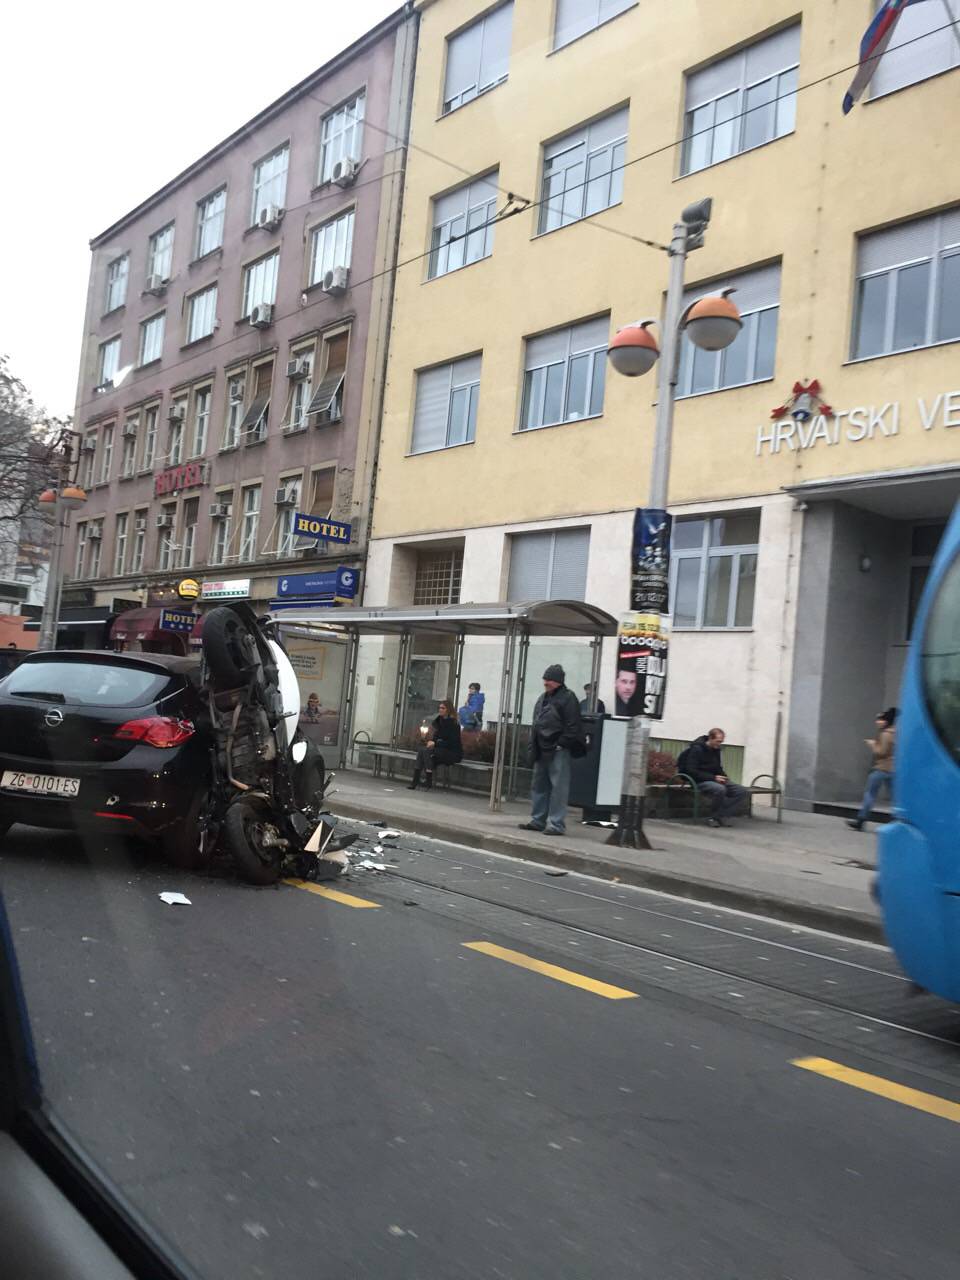 Sudarili su se auto i skuter u Savskoj, jedan čovjek ozlijeđen